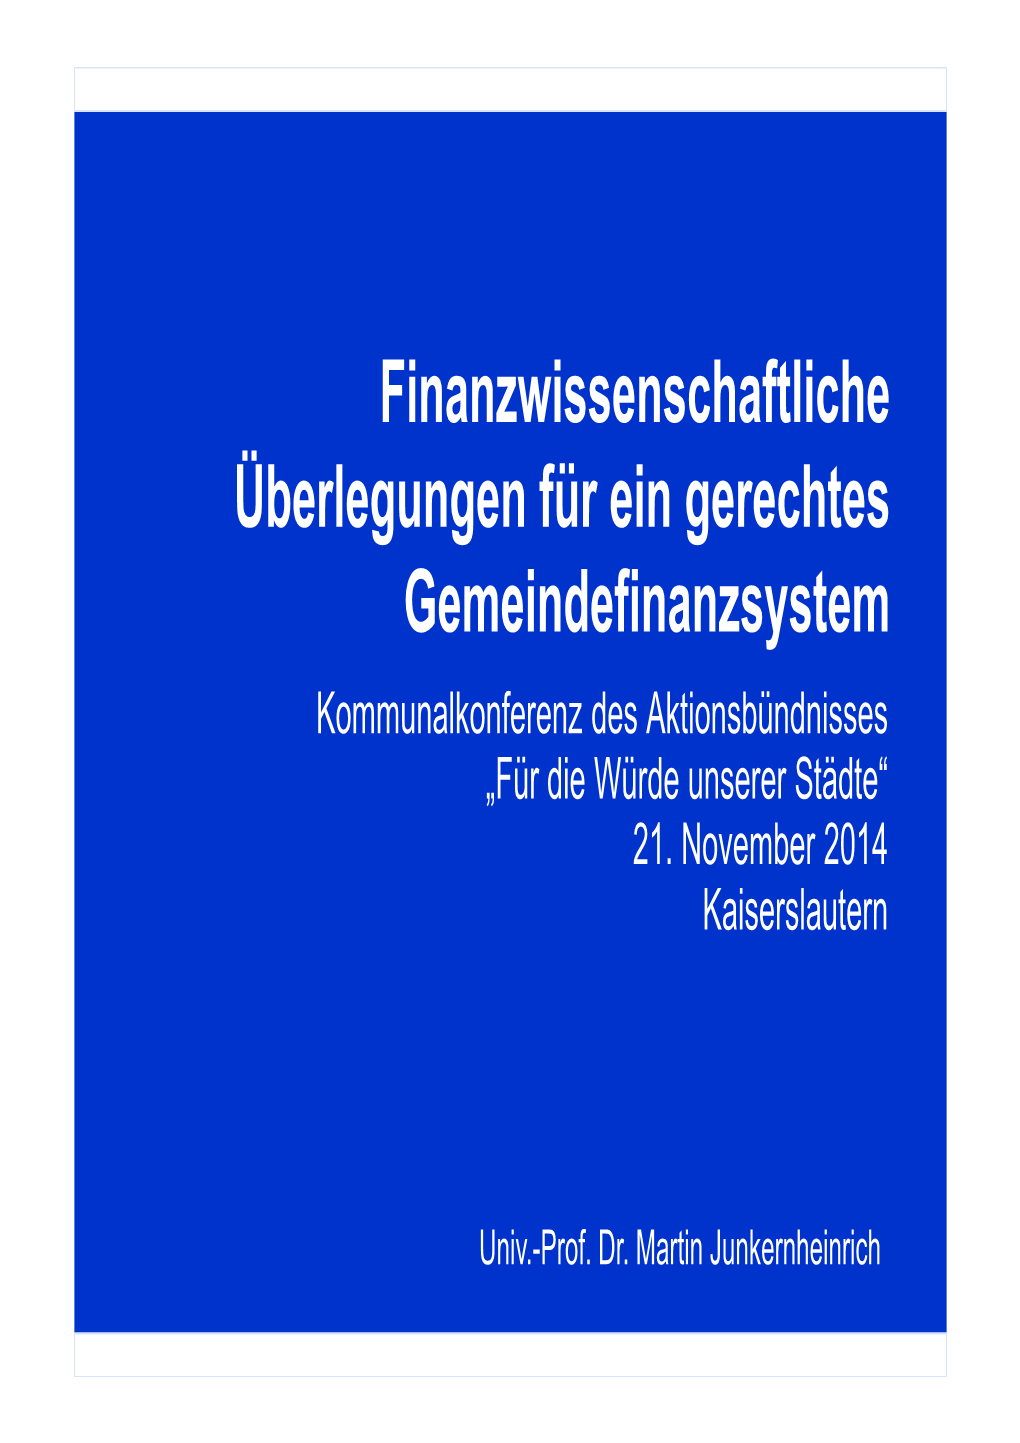 Kaiserslauterner Appells: Schaffung Eines Gerechten Gemeindefinanzsystems